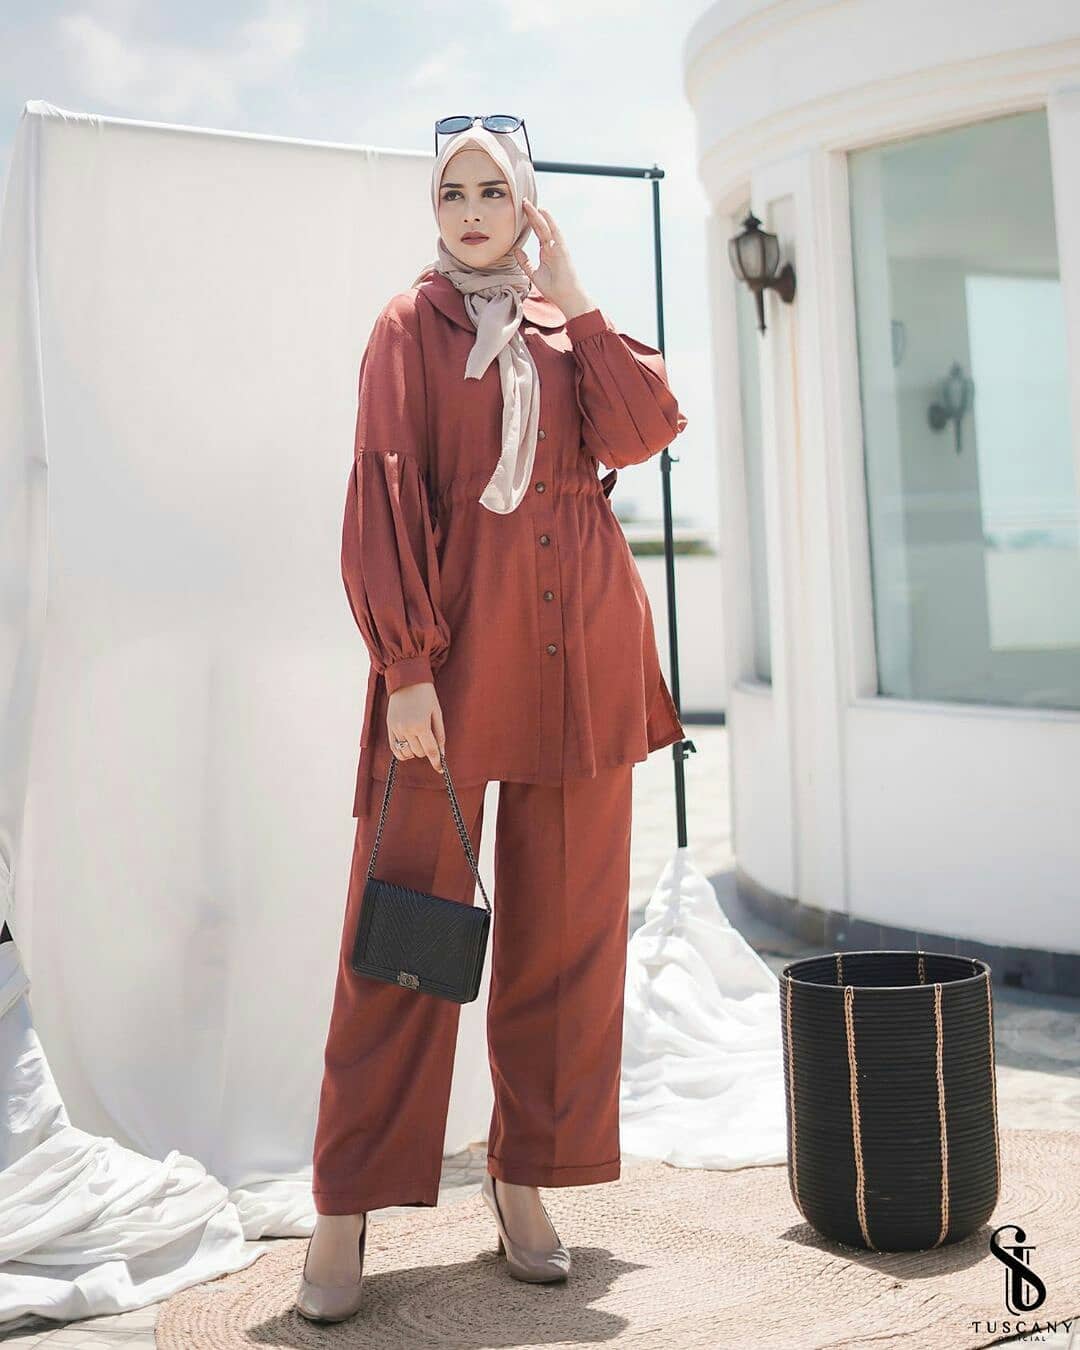 Baju Muslim Modern NATHALI SET AF Bahan SUPERNOVA SIZE M L XL DAPAT ATASAN DAN CELANA KANCING HIDUP / BUSUI Setelan Baju Dan Celana Setelan Wanita Terbaru 2021 Kekinian OOTD Set 2in1 BEST SELLER